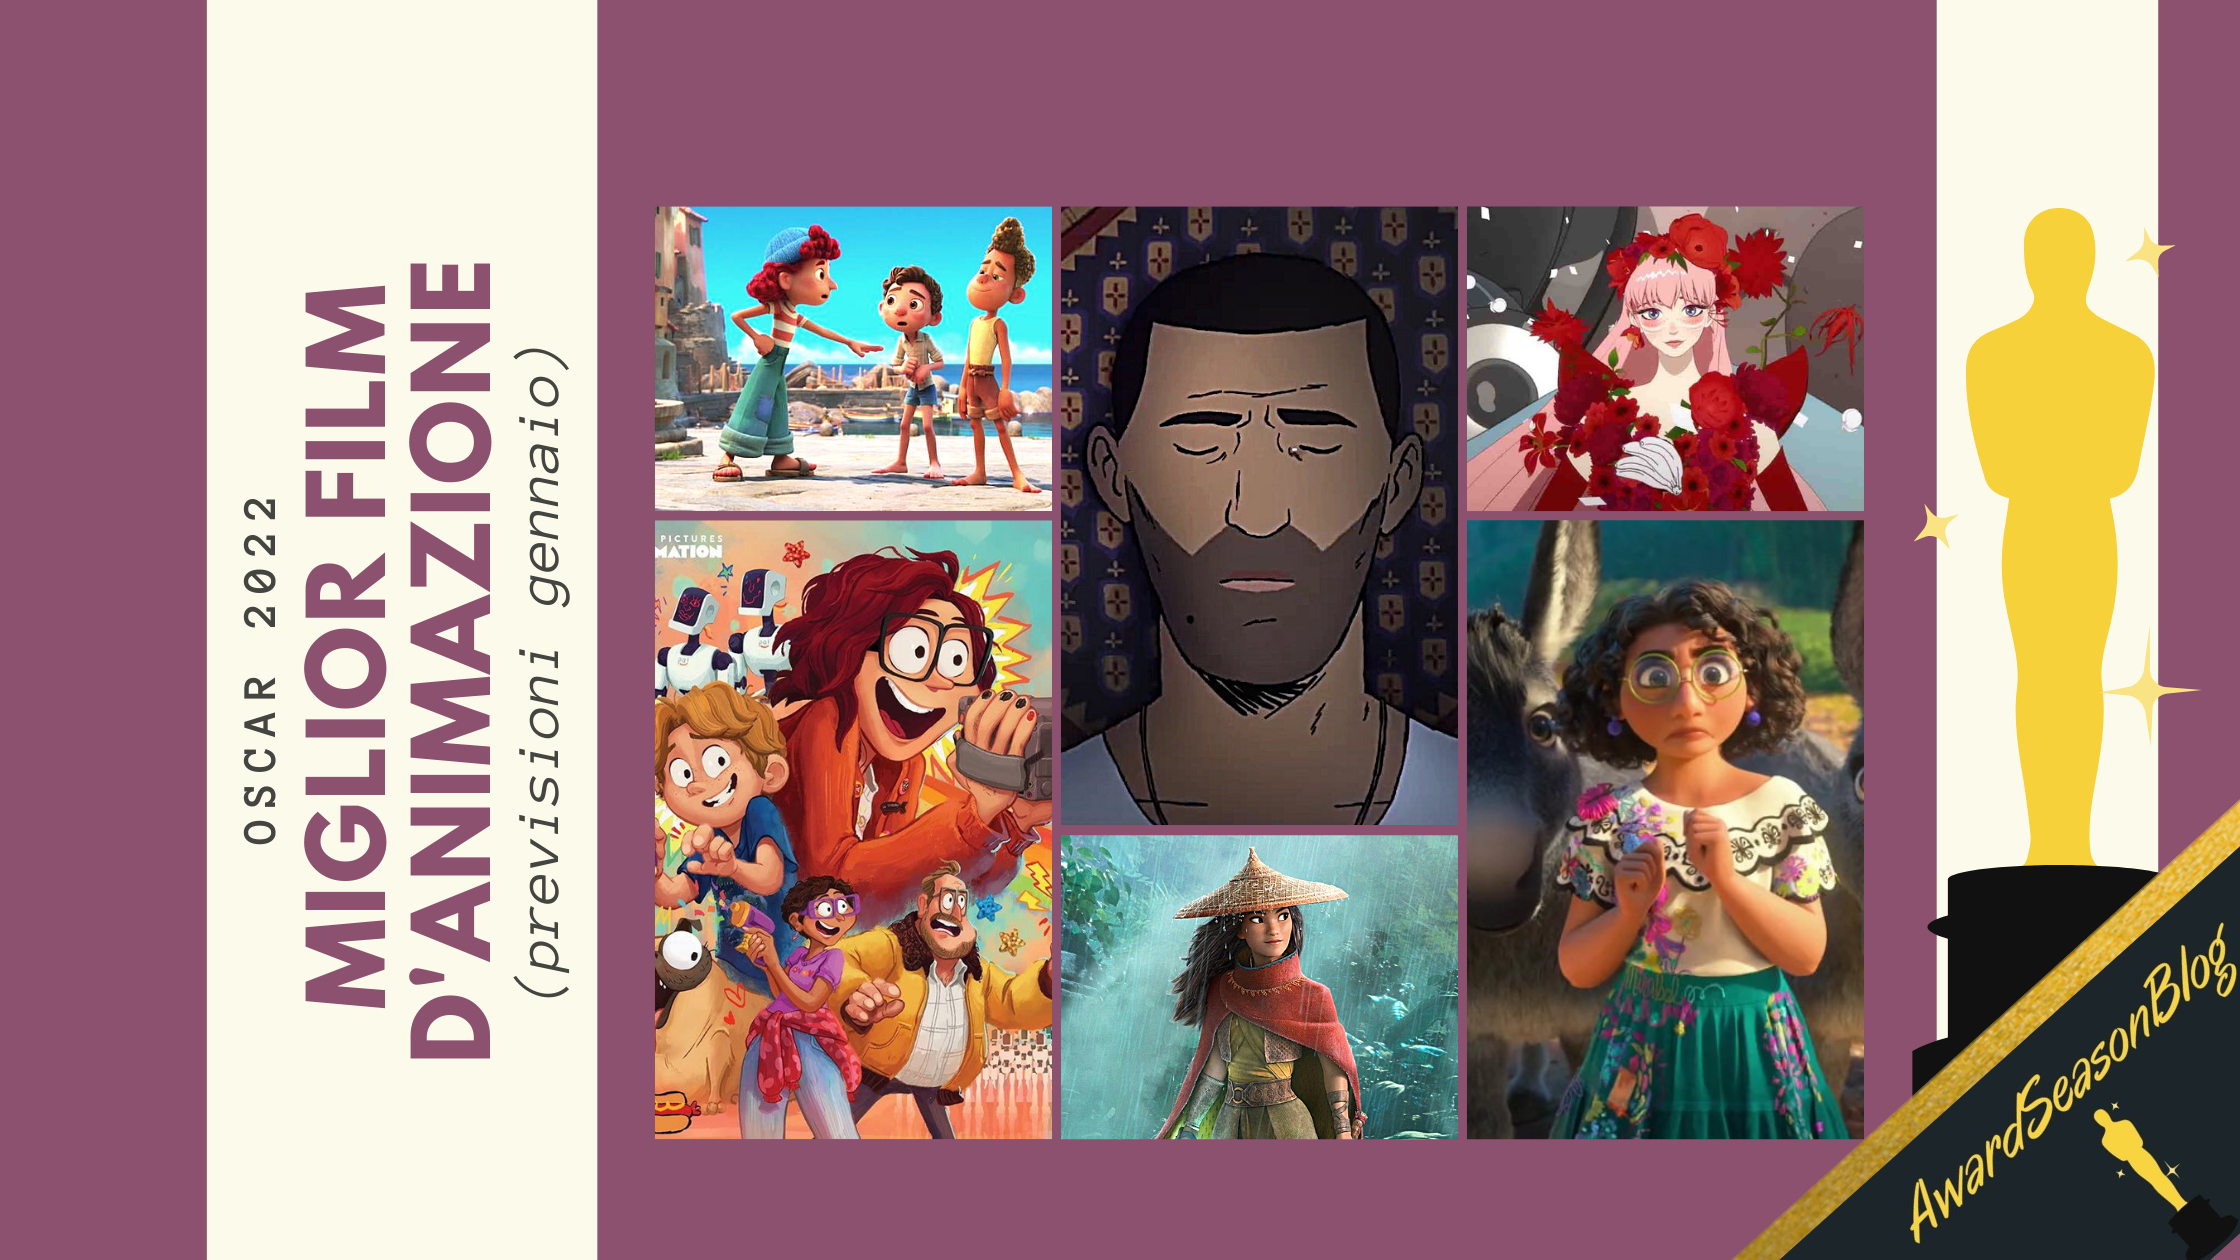 Oscar 2022: quali film d’animazione sono favoriti per la nomination? (previsioni gennaio)